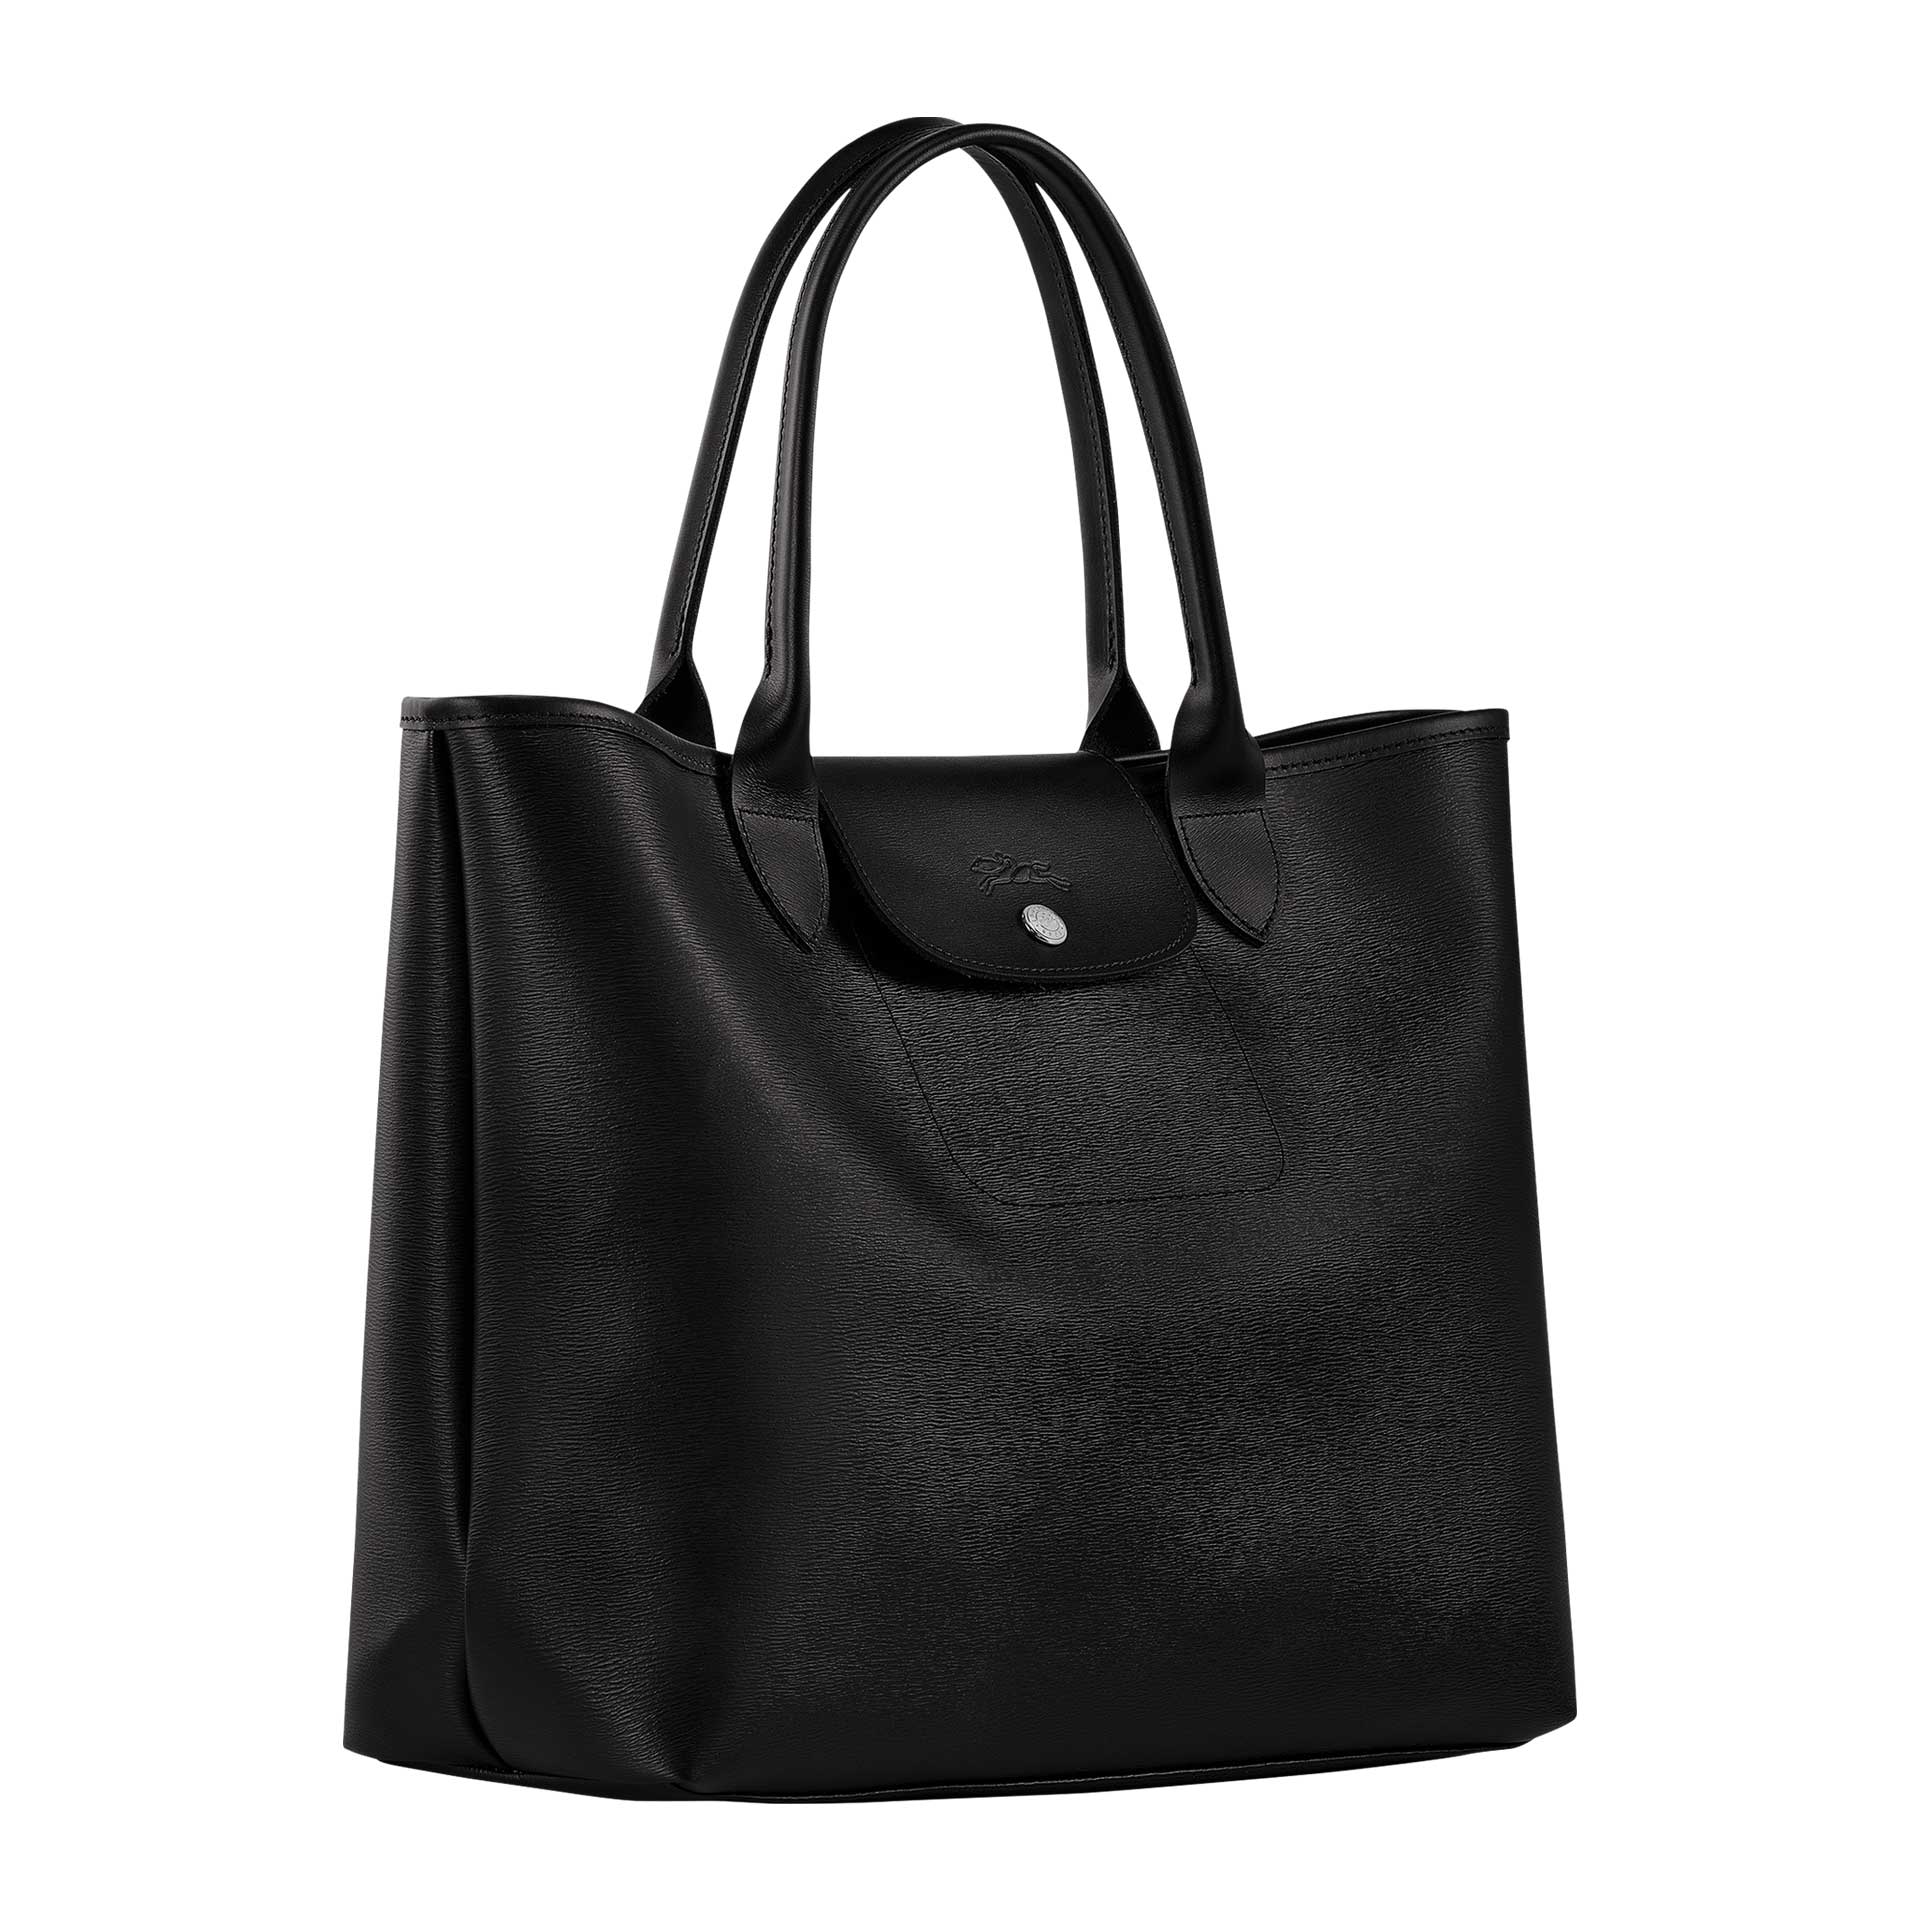 Longchamp Le Pliage City Handtasche black